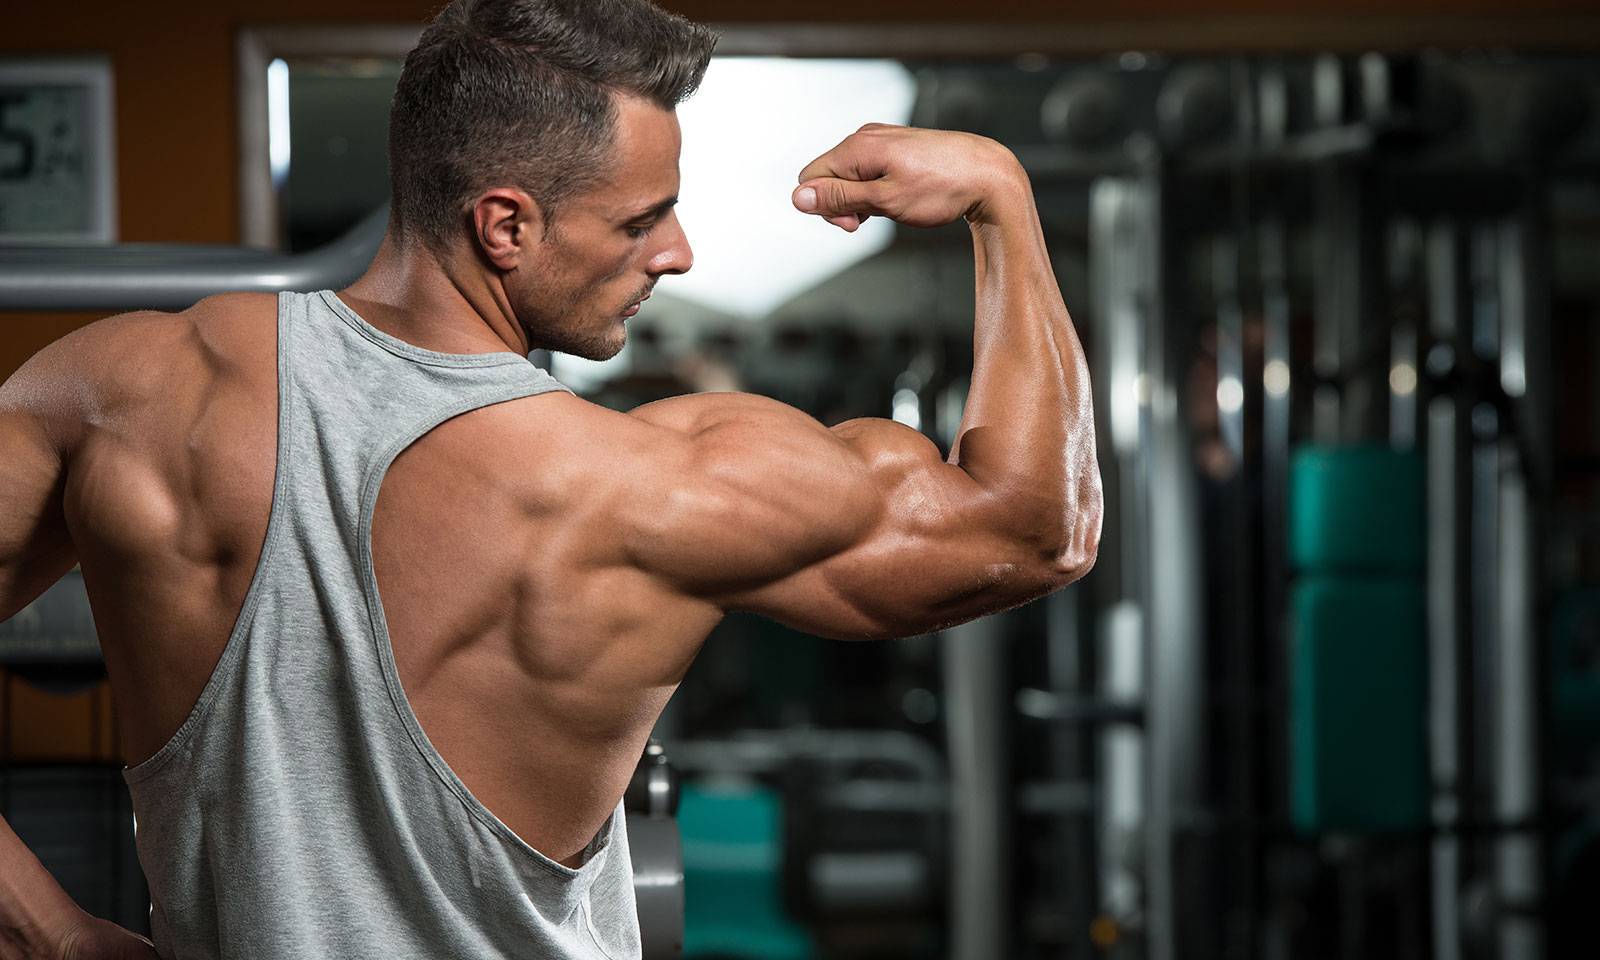 Как накачать мышцы с нуля? что нужно, чтобы нарастить мышечную массу?